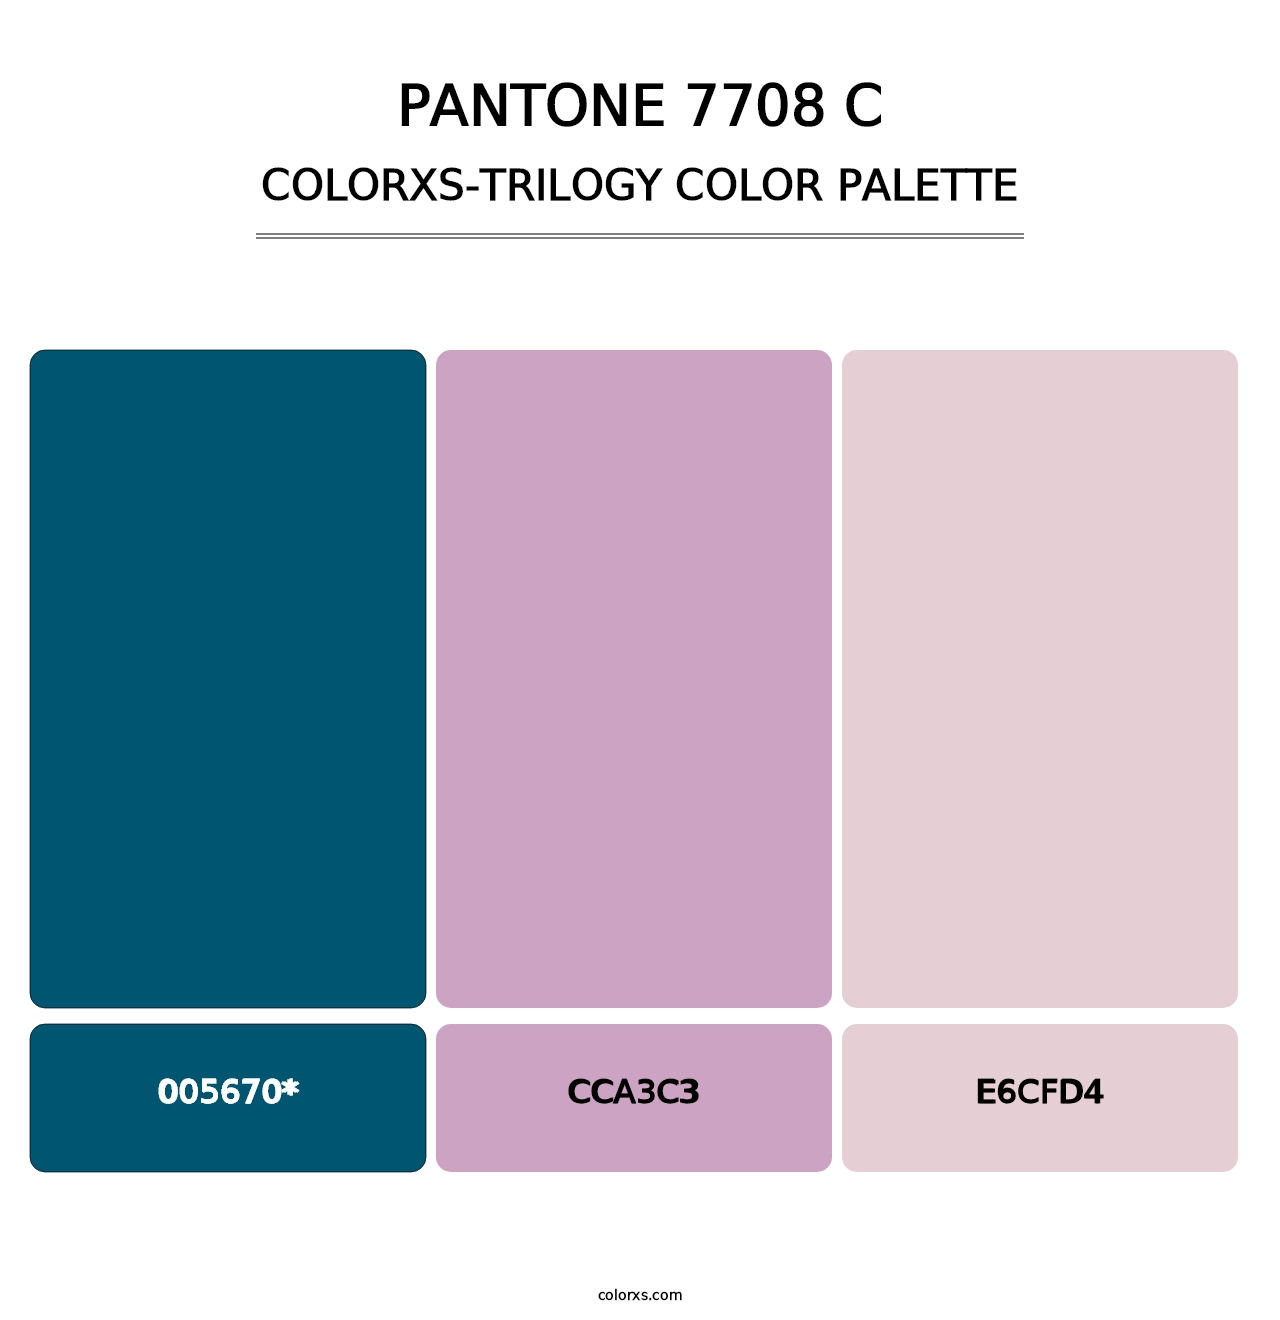 PANTONE 7708 C - Colorxs Trilogy Palette